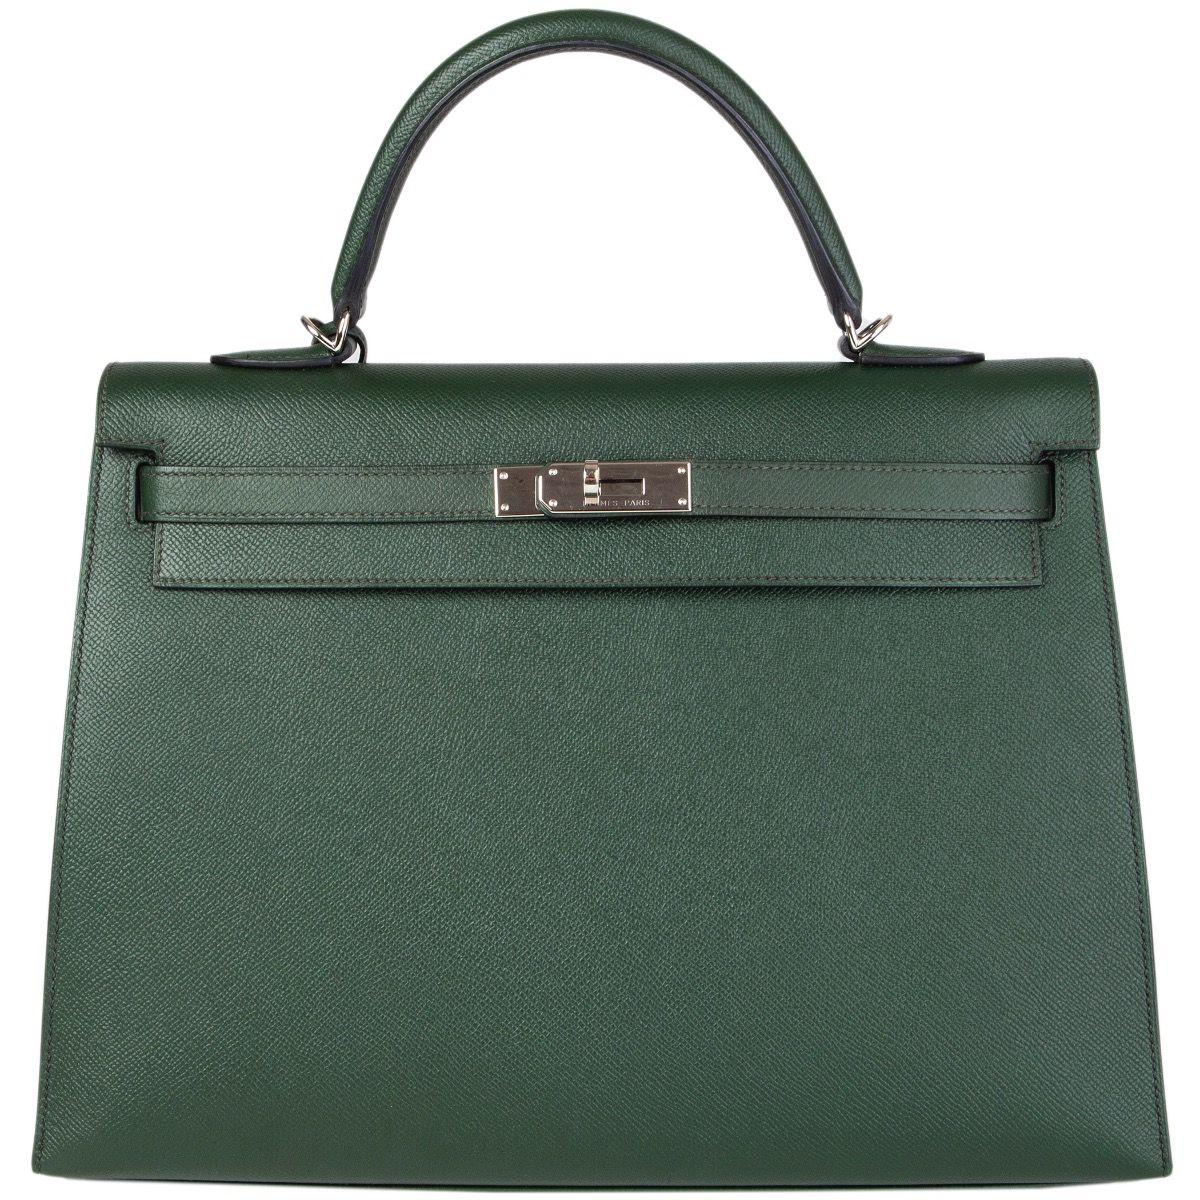 HERMES Vert Anglais green Epsom leather & Palladium KELLY 35 Sellier Bag